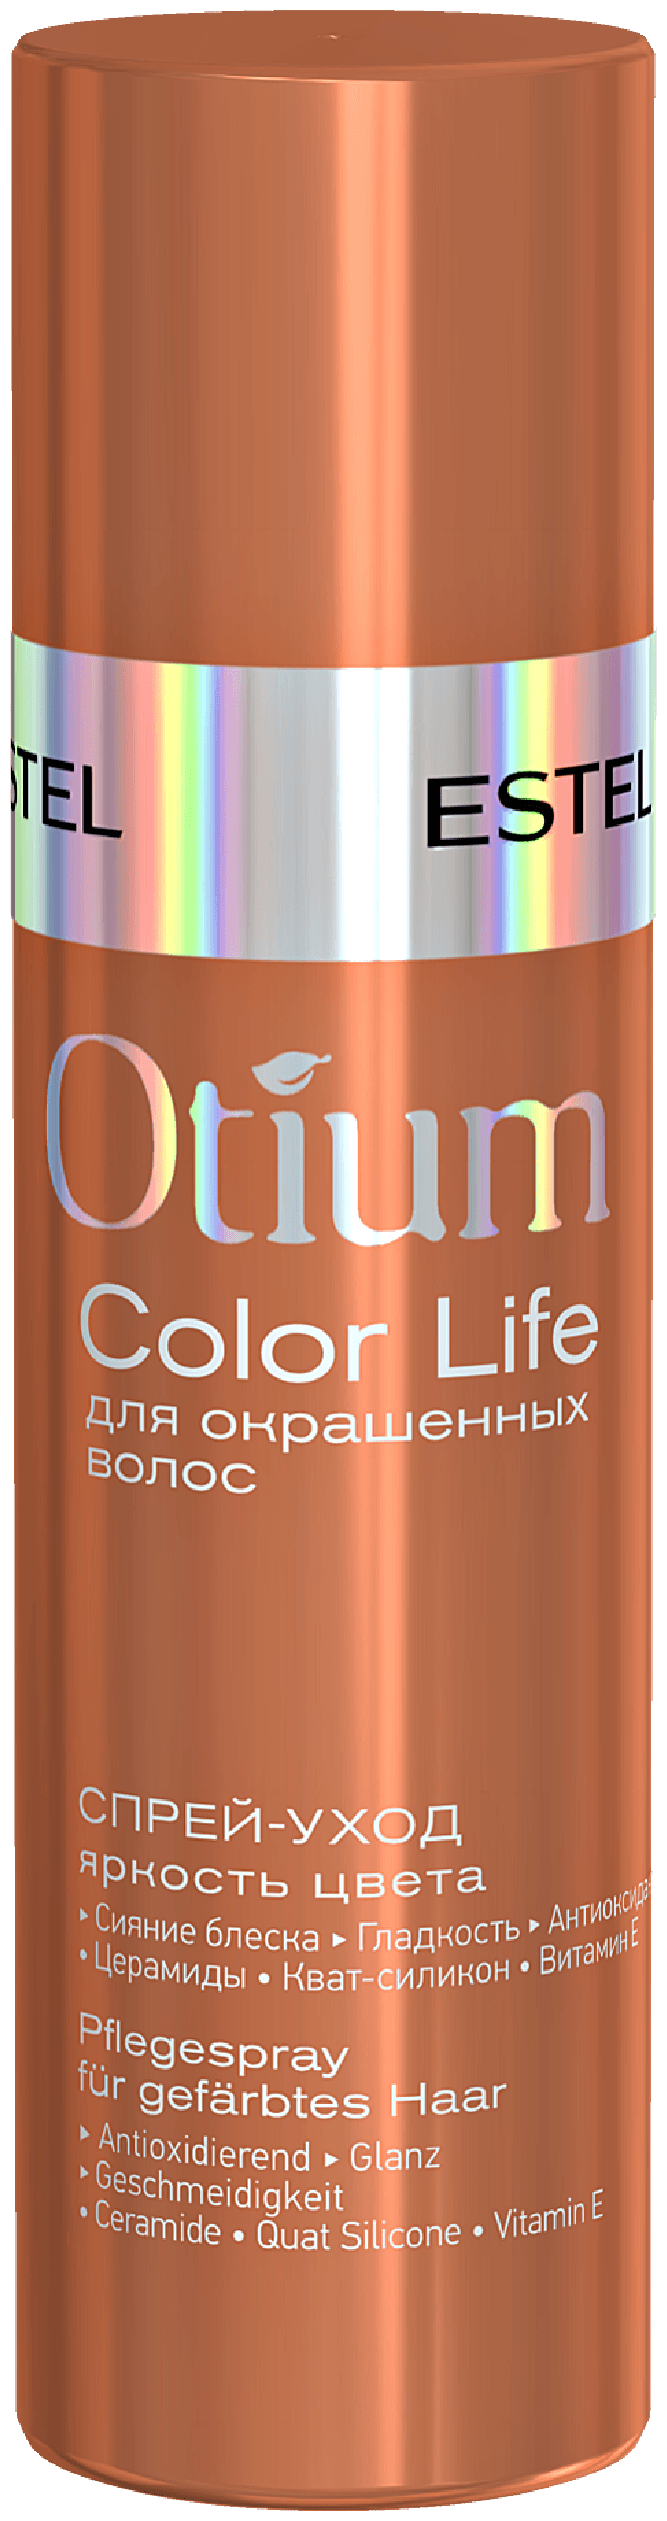 ESTEL OTIUM COLOR LIFE Спрей-уход Яркость цвета для окрашенных волос, 100 мл, спрей